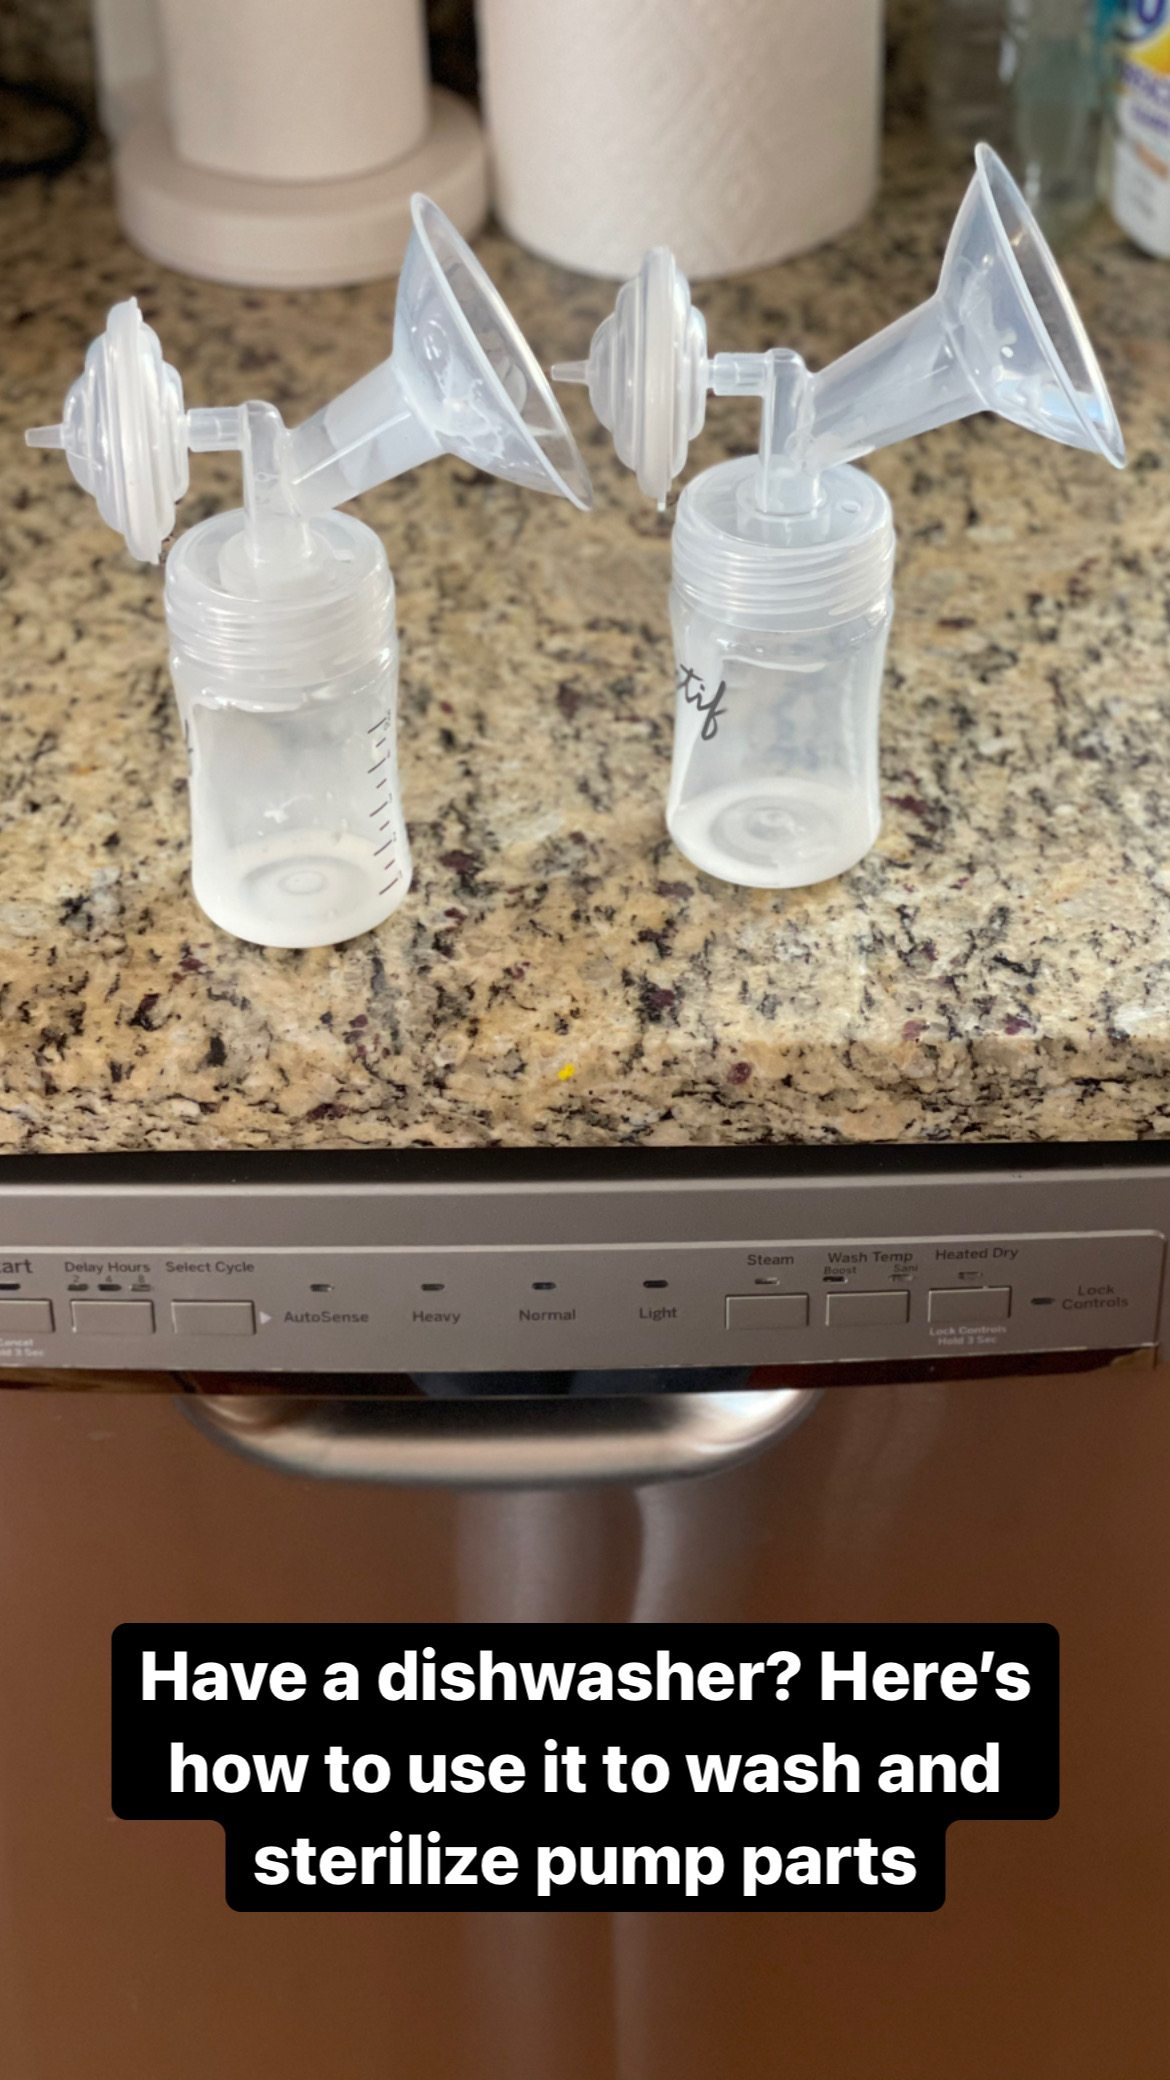 Wash baby bottles in a Samsung dishwasher